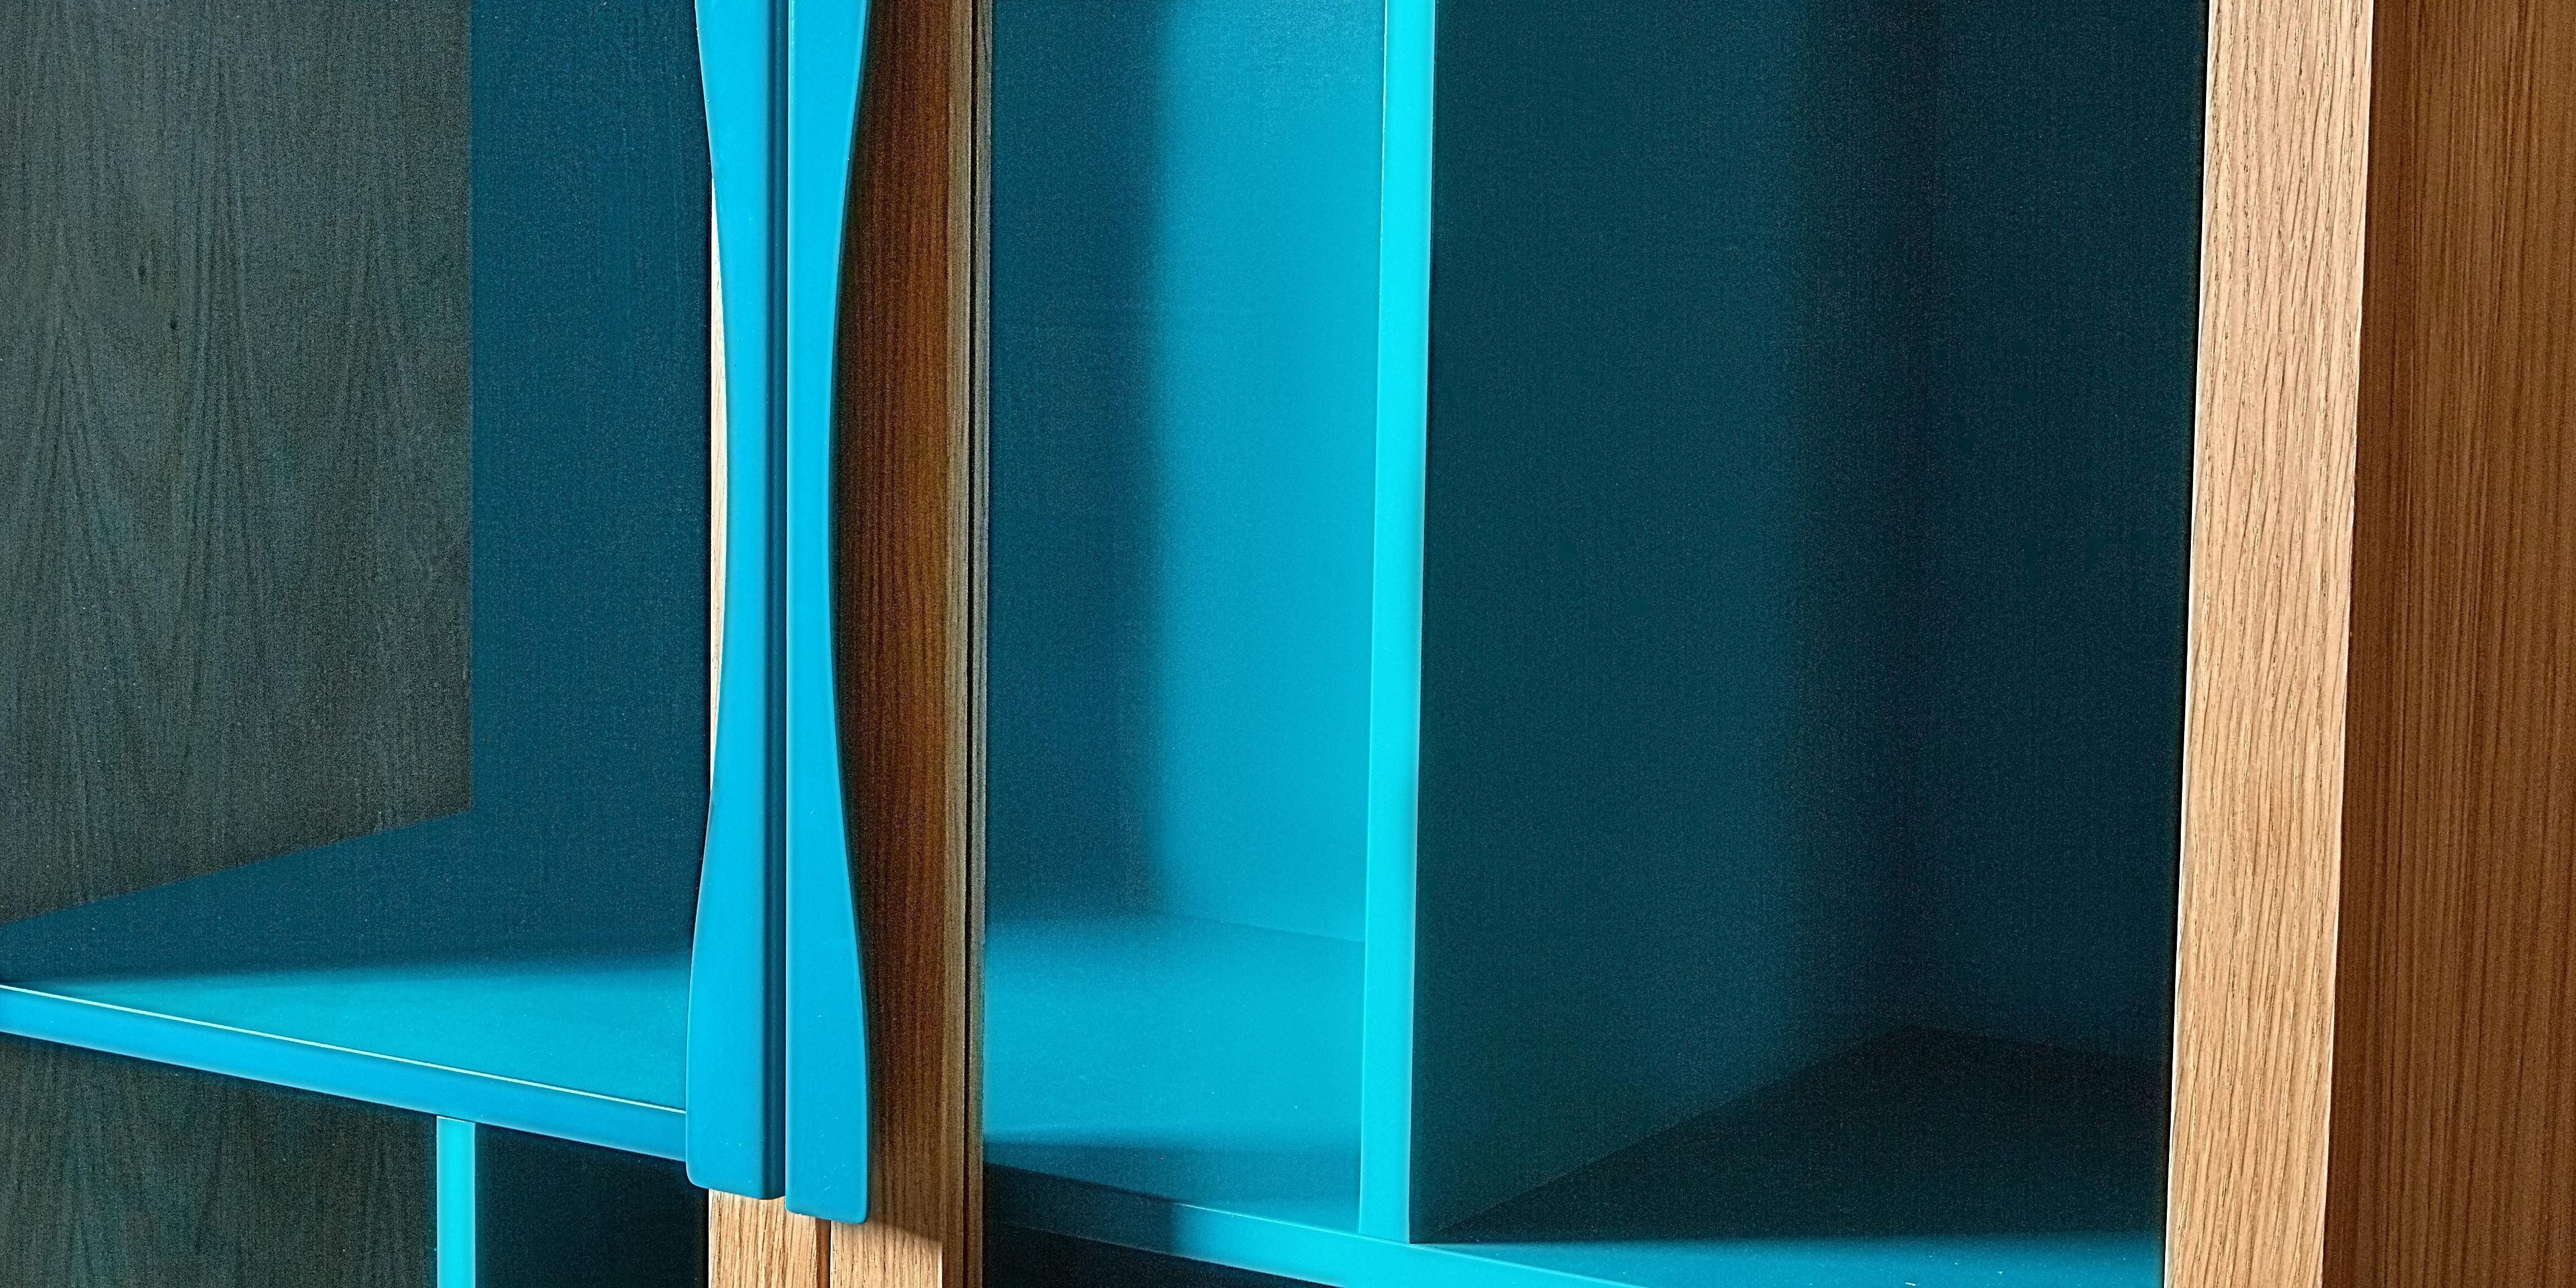 aus Bücherregal Glaseinsätzen, mit Breite Woodman Holzfurnier Hilla, 88 Türen Eiche cm, natur/blau